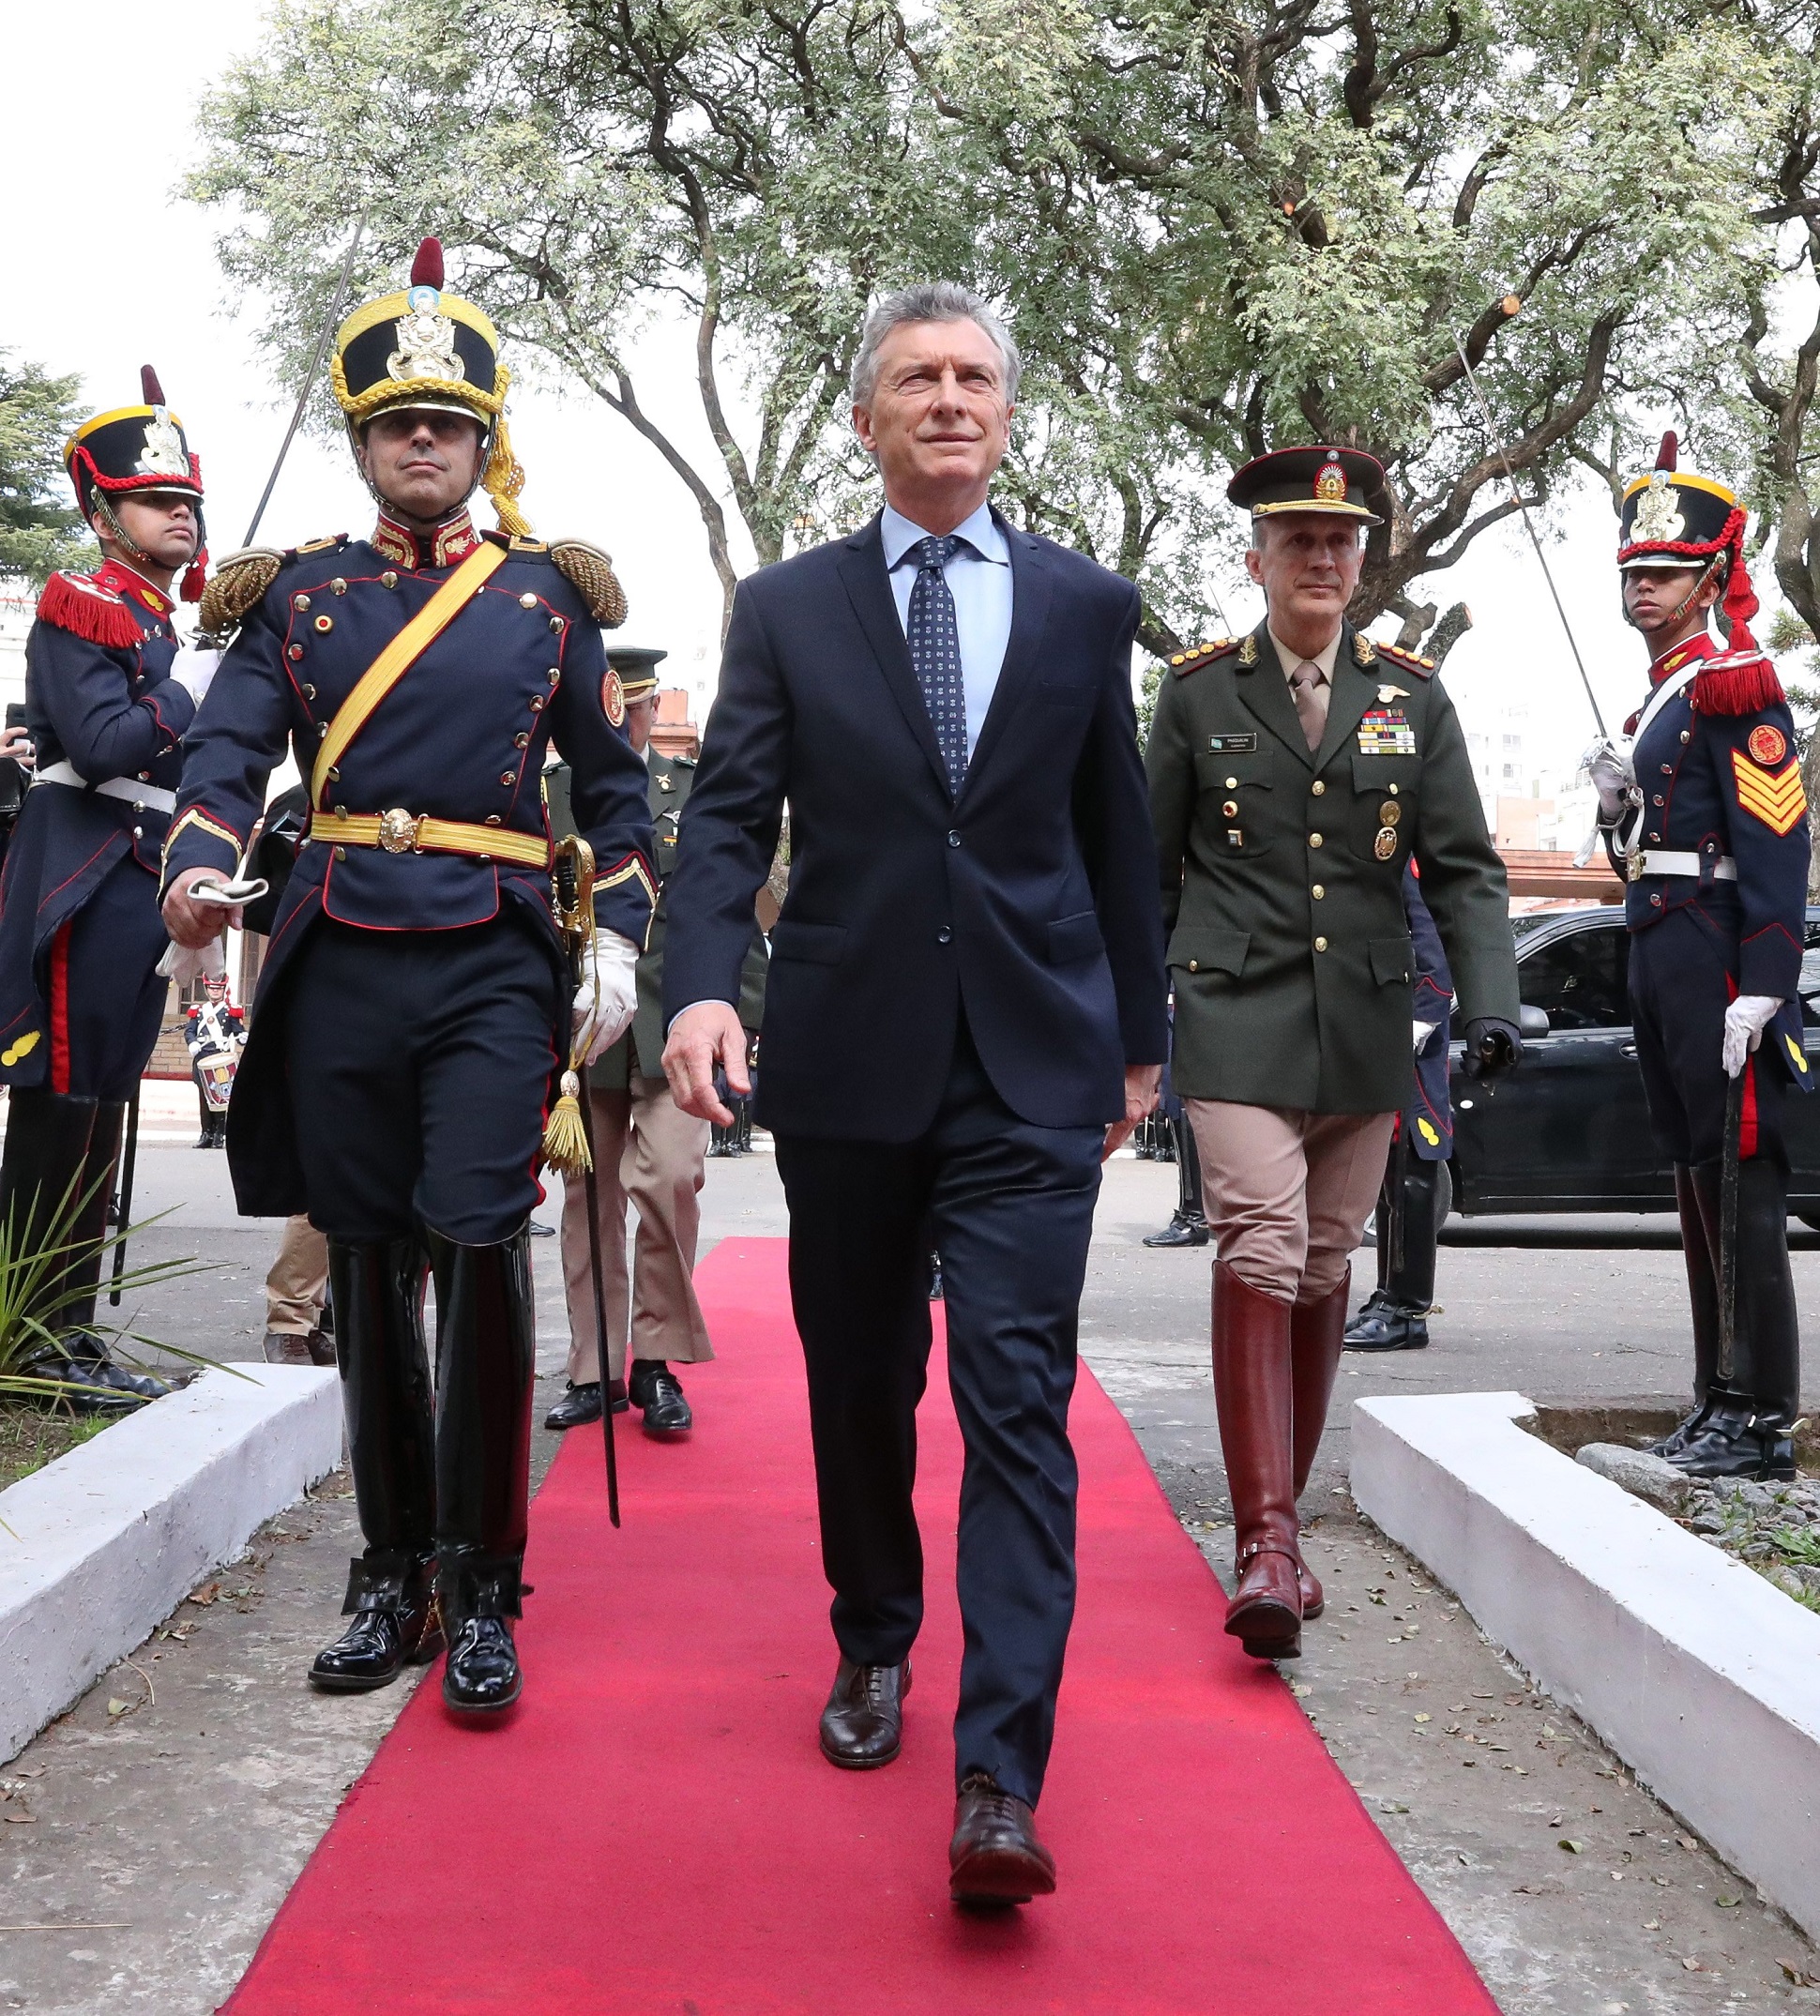 Macri: “Los invito a seguir encarnando este cambio cultural juntos”